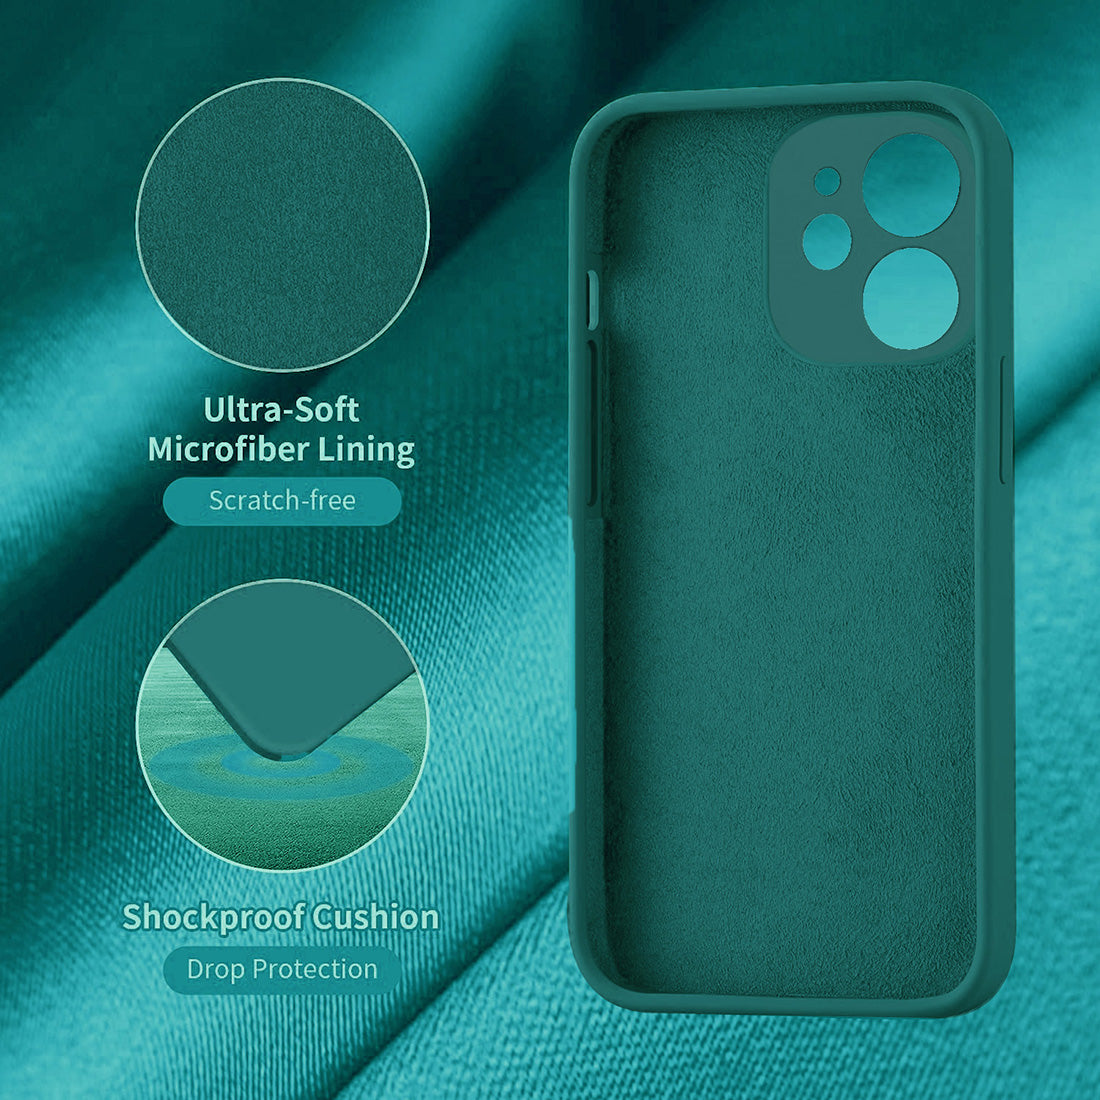 Liquid Silicone Case for Apple iPhone 12 Mini